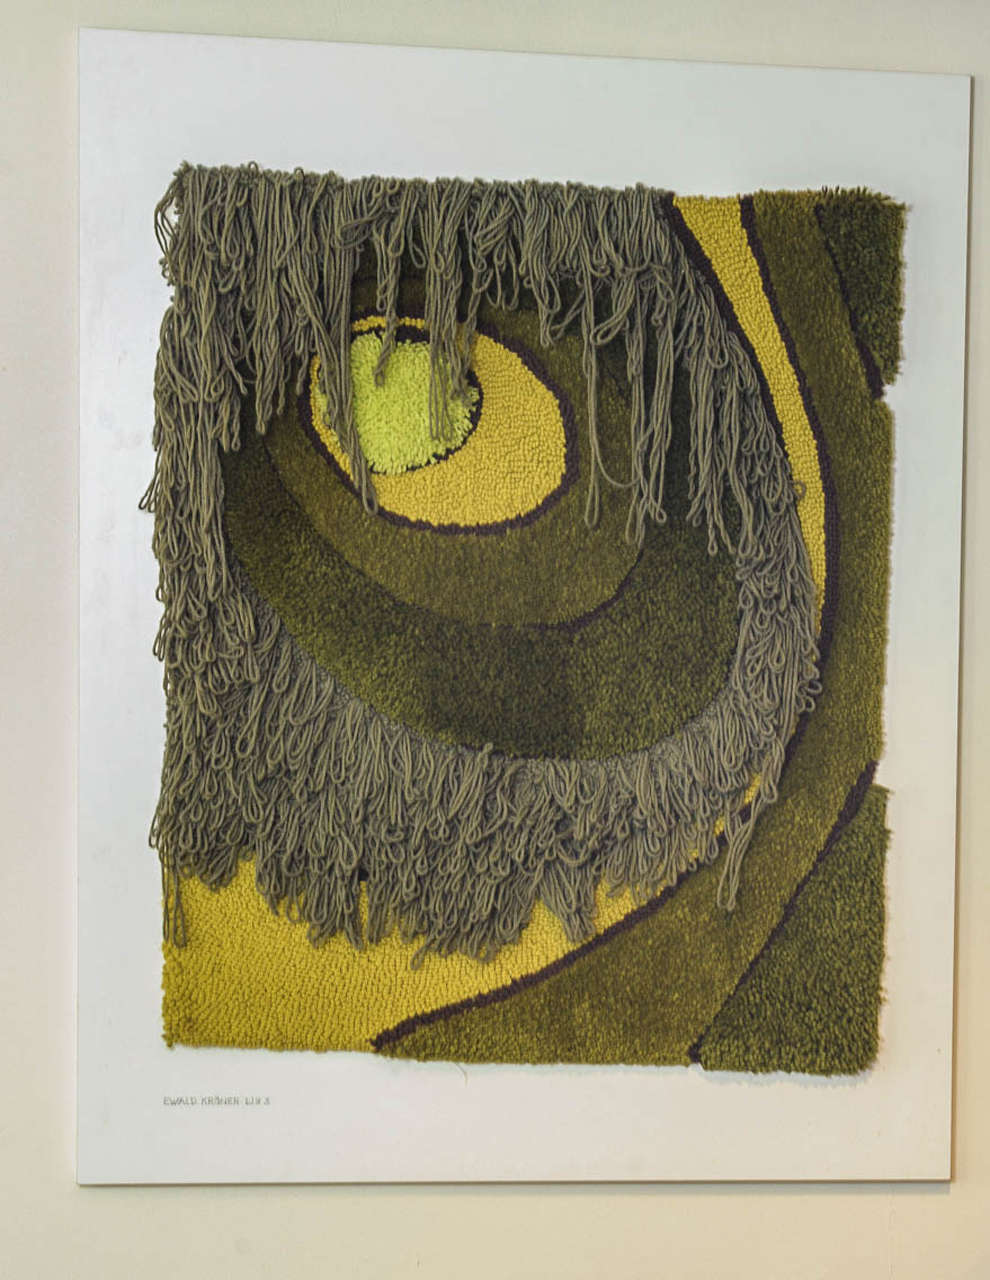 Ewald Kröner gilt als der deutsche Referenzkünstler für getuftete Kunstteppiche und Teppiche. Seit mehreren Jahrzehnten, seit den 1960er Jahren, fördert er künstlerische Wandteppiche. Kro¨ner umfasste eine Reihe komplementärer Tätigkeiten wie die